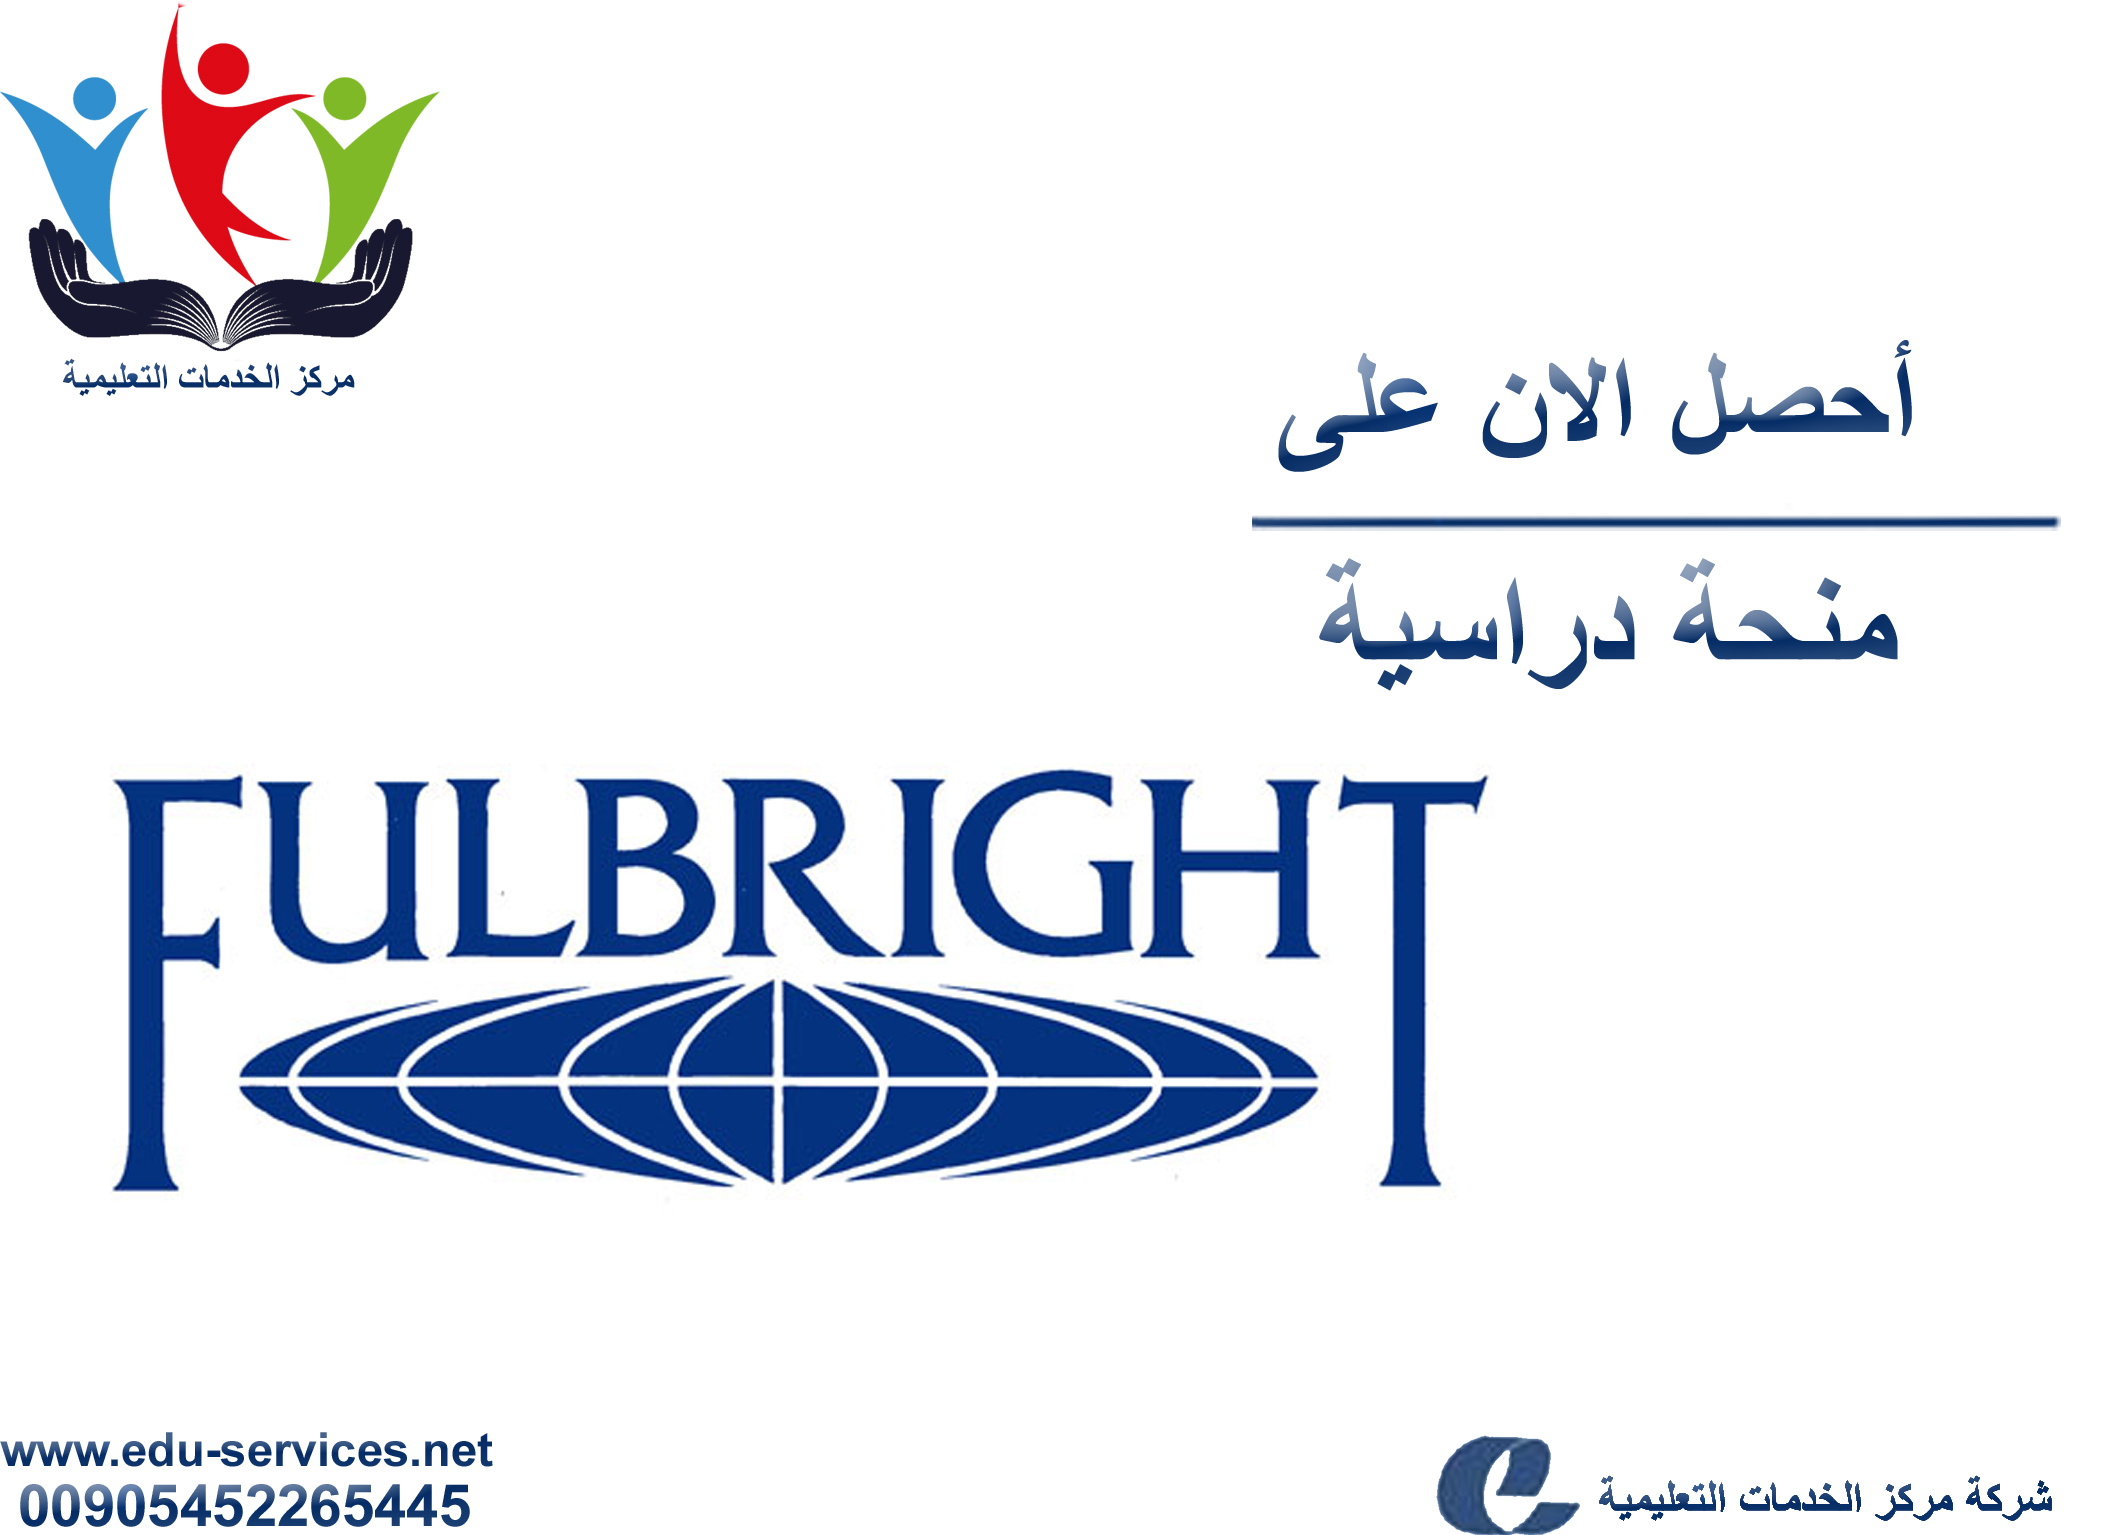 منح دراسية لدرجة الماجستير والدكتوراه من Fulbright في أمريكا للعام 2018